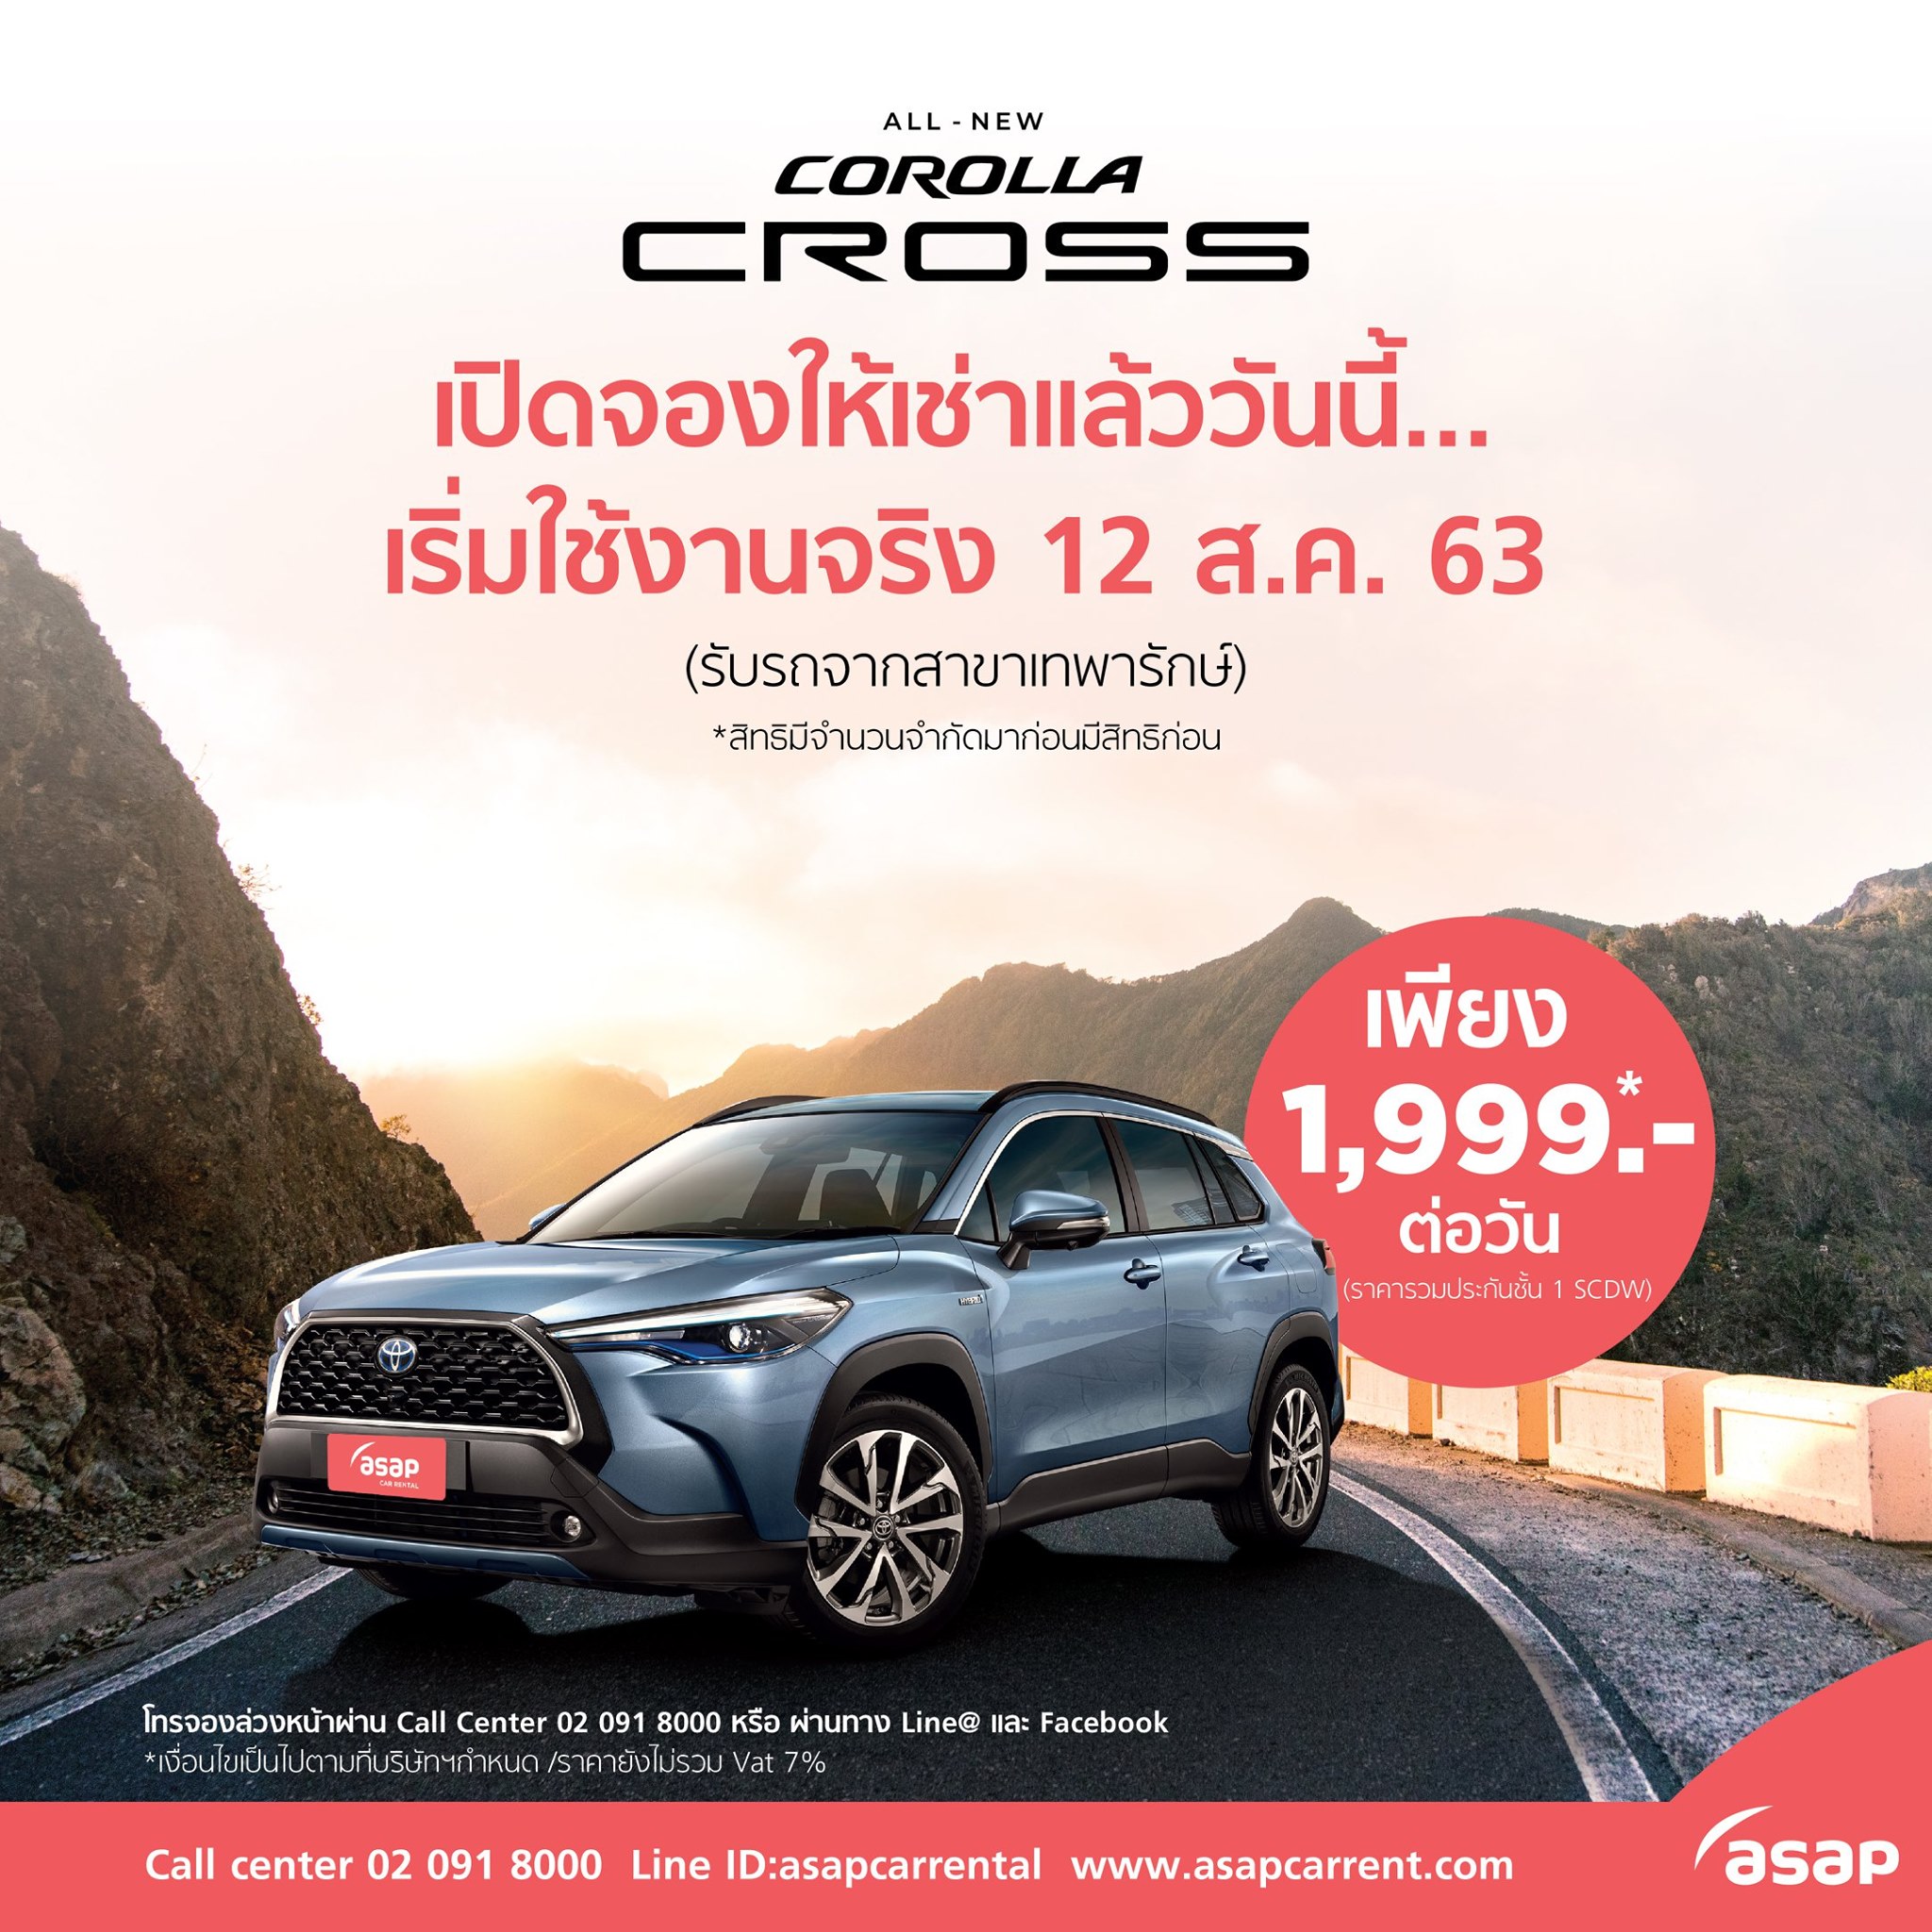 Gossip News: ASAP เปิดจองเช่ารถรุ่นใหม่ TOYOTA Corolla Cross ให้ลูกค้าใช้บริการก่อนใครในราคาเพียง 1,999 บาท